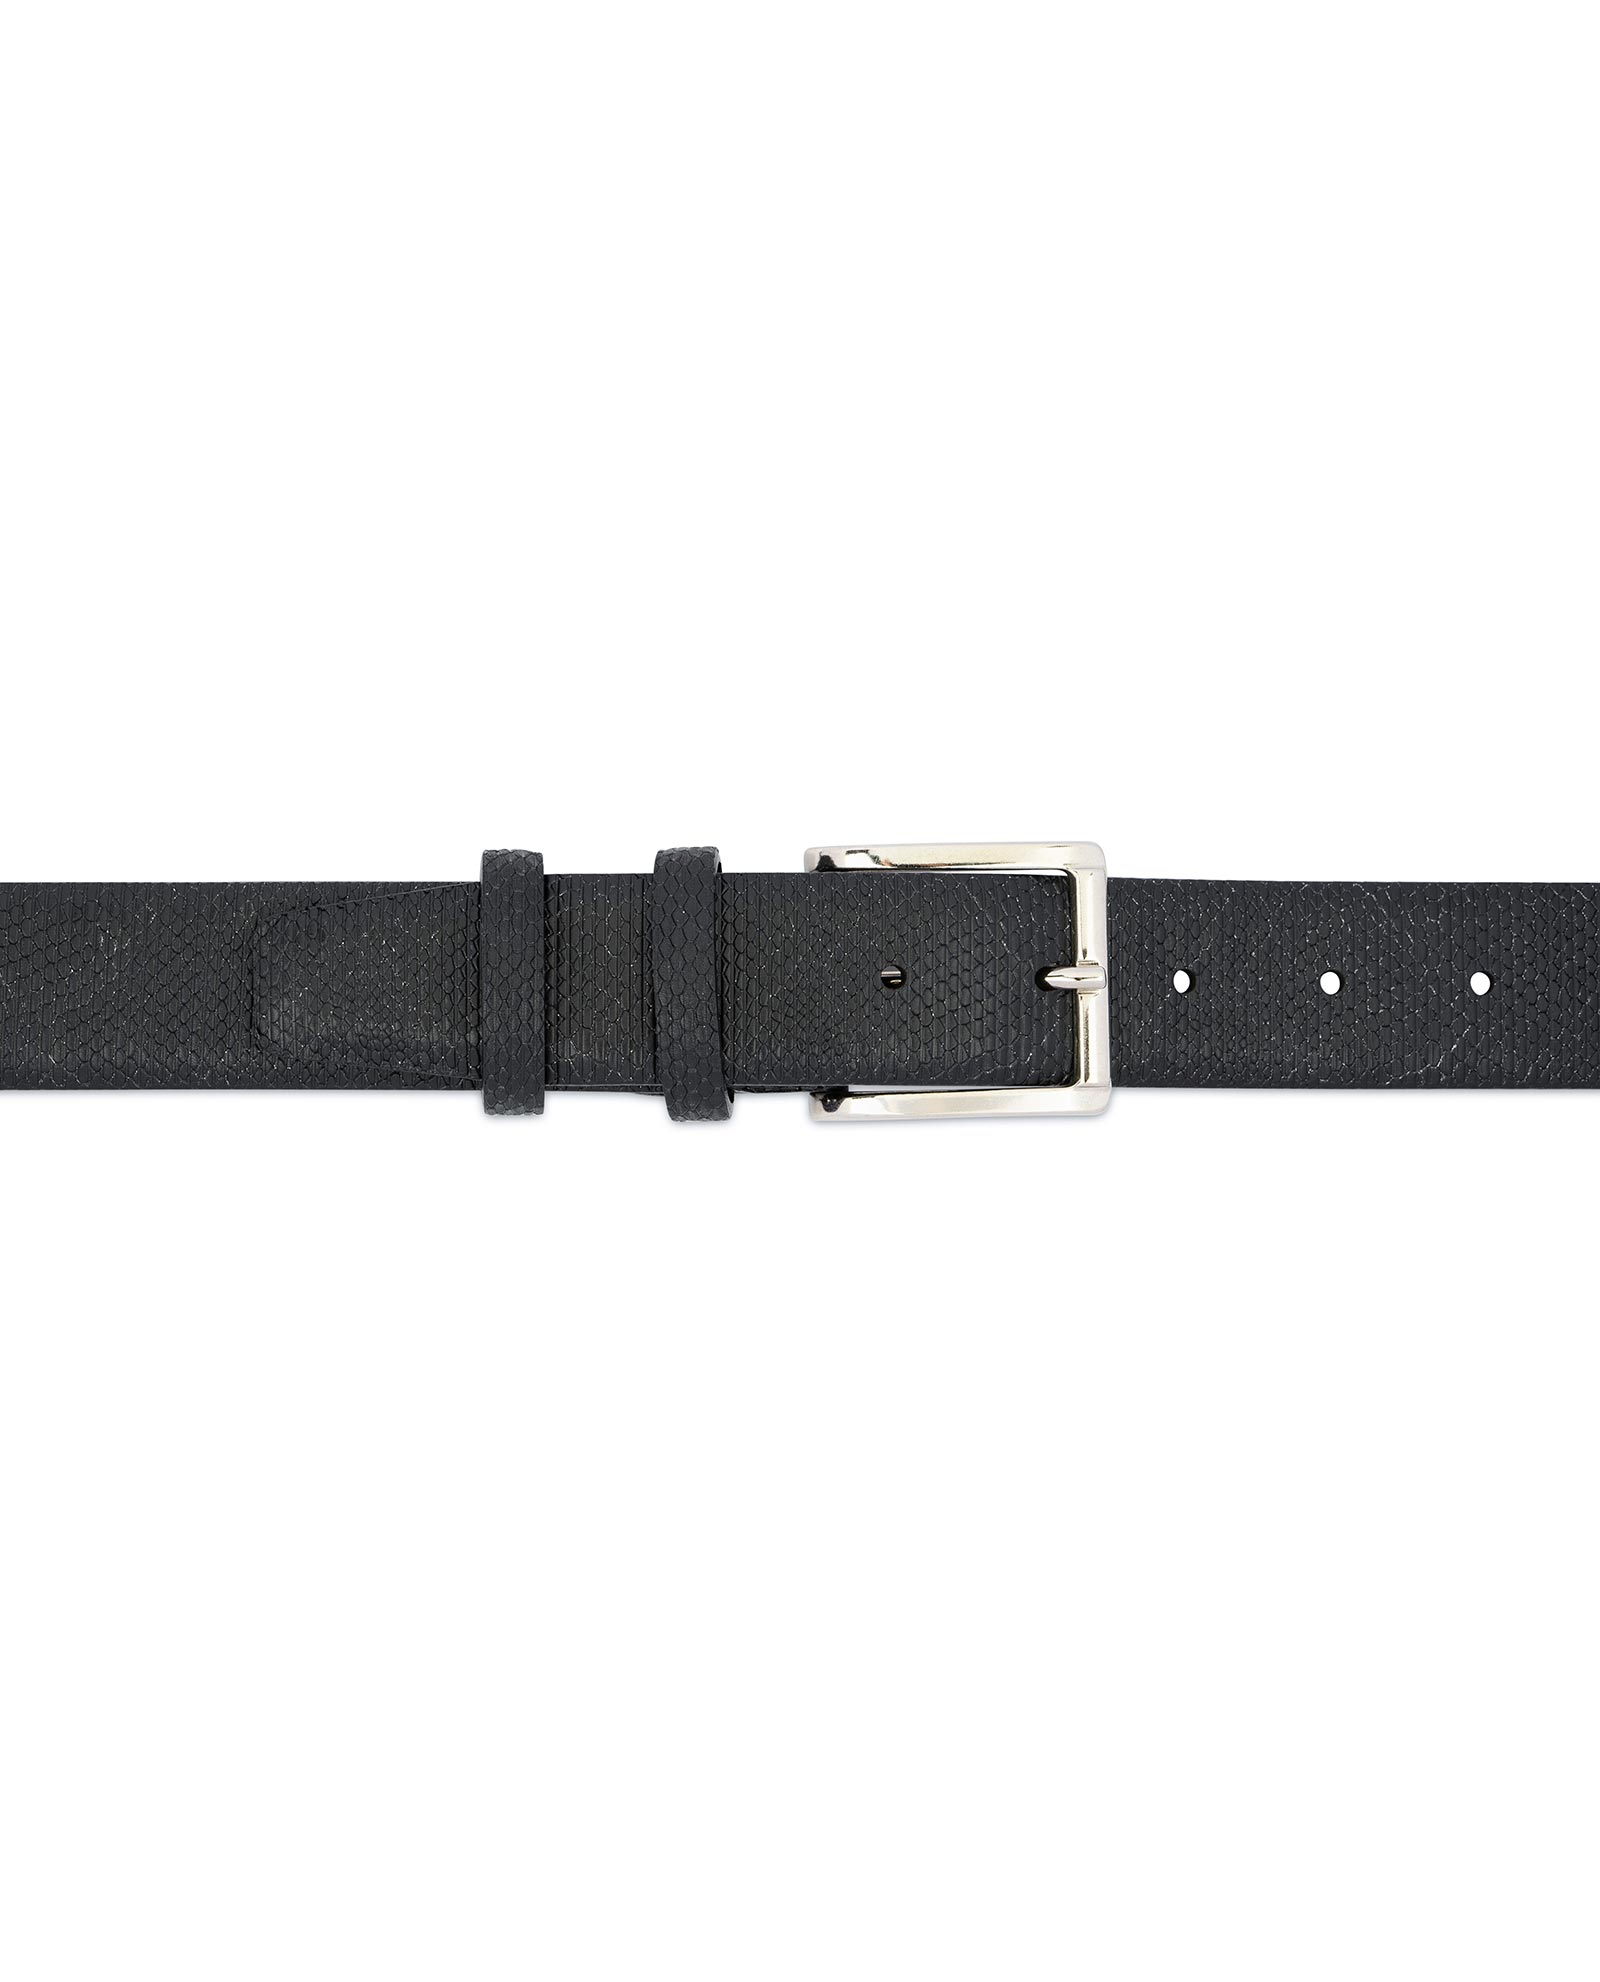 Buy Snake Print Belt for Men | Black 3.5 cm | LeatherBeltsOnline.com